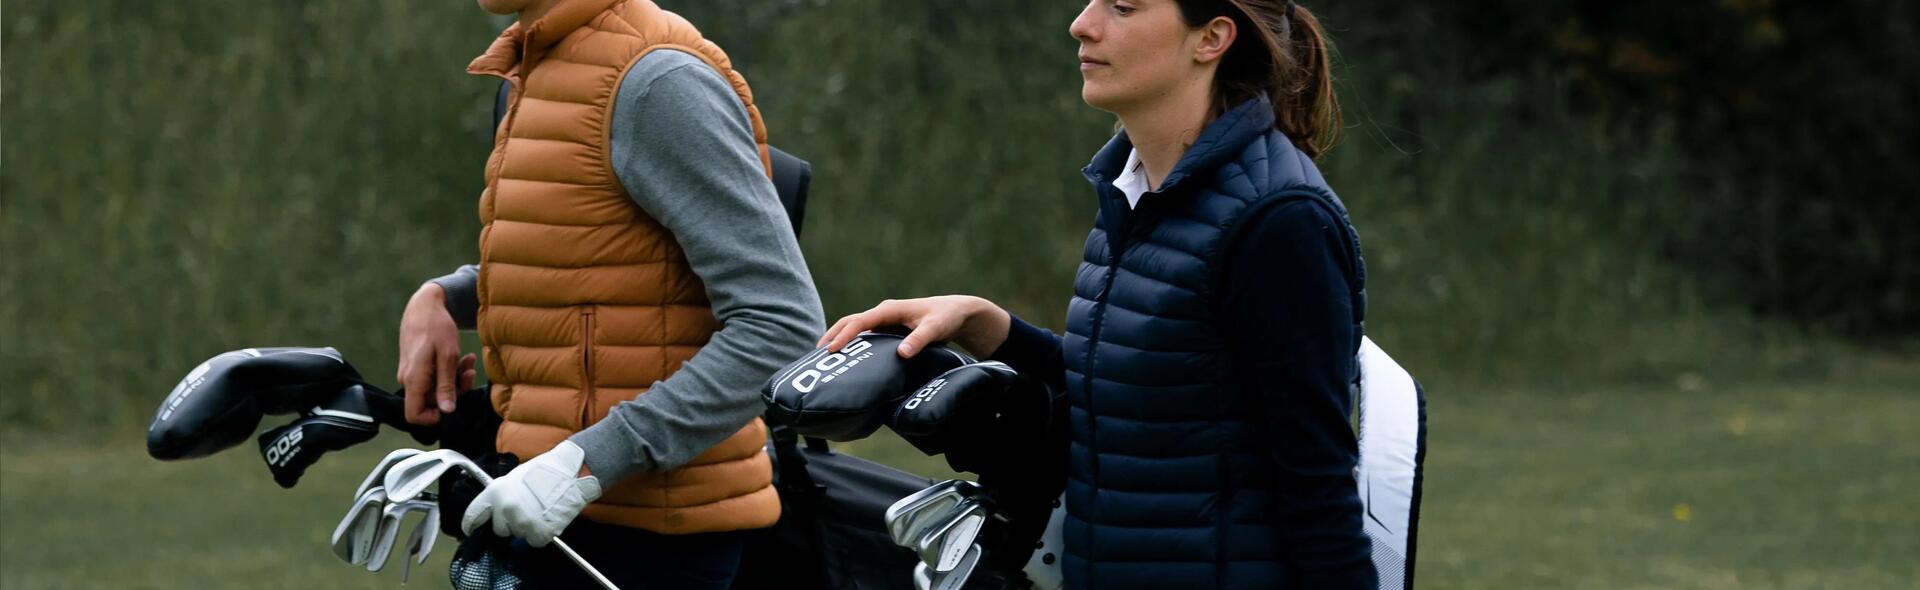 kobieta i mężczyzna niosący kije do gry w golfa w torbach golfowych